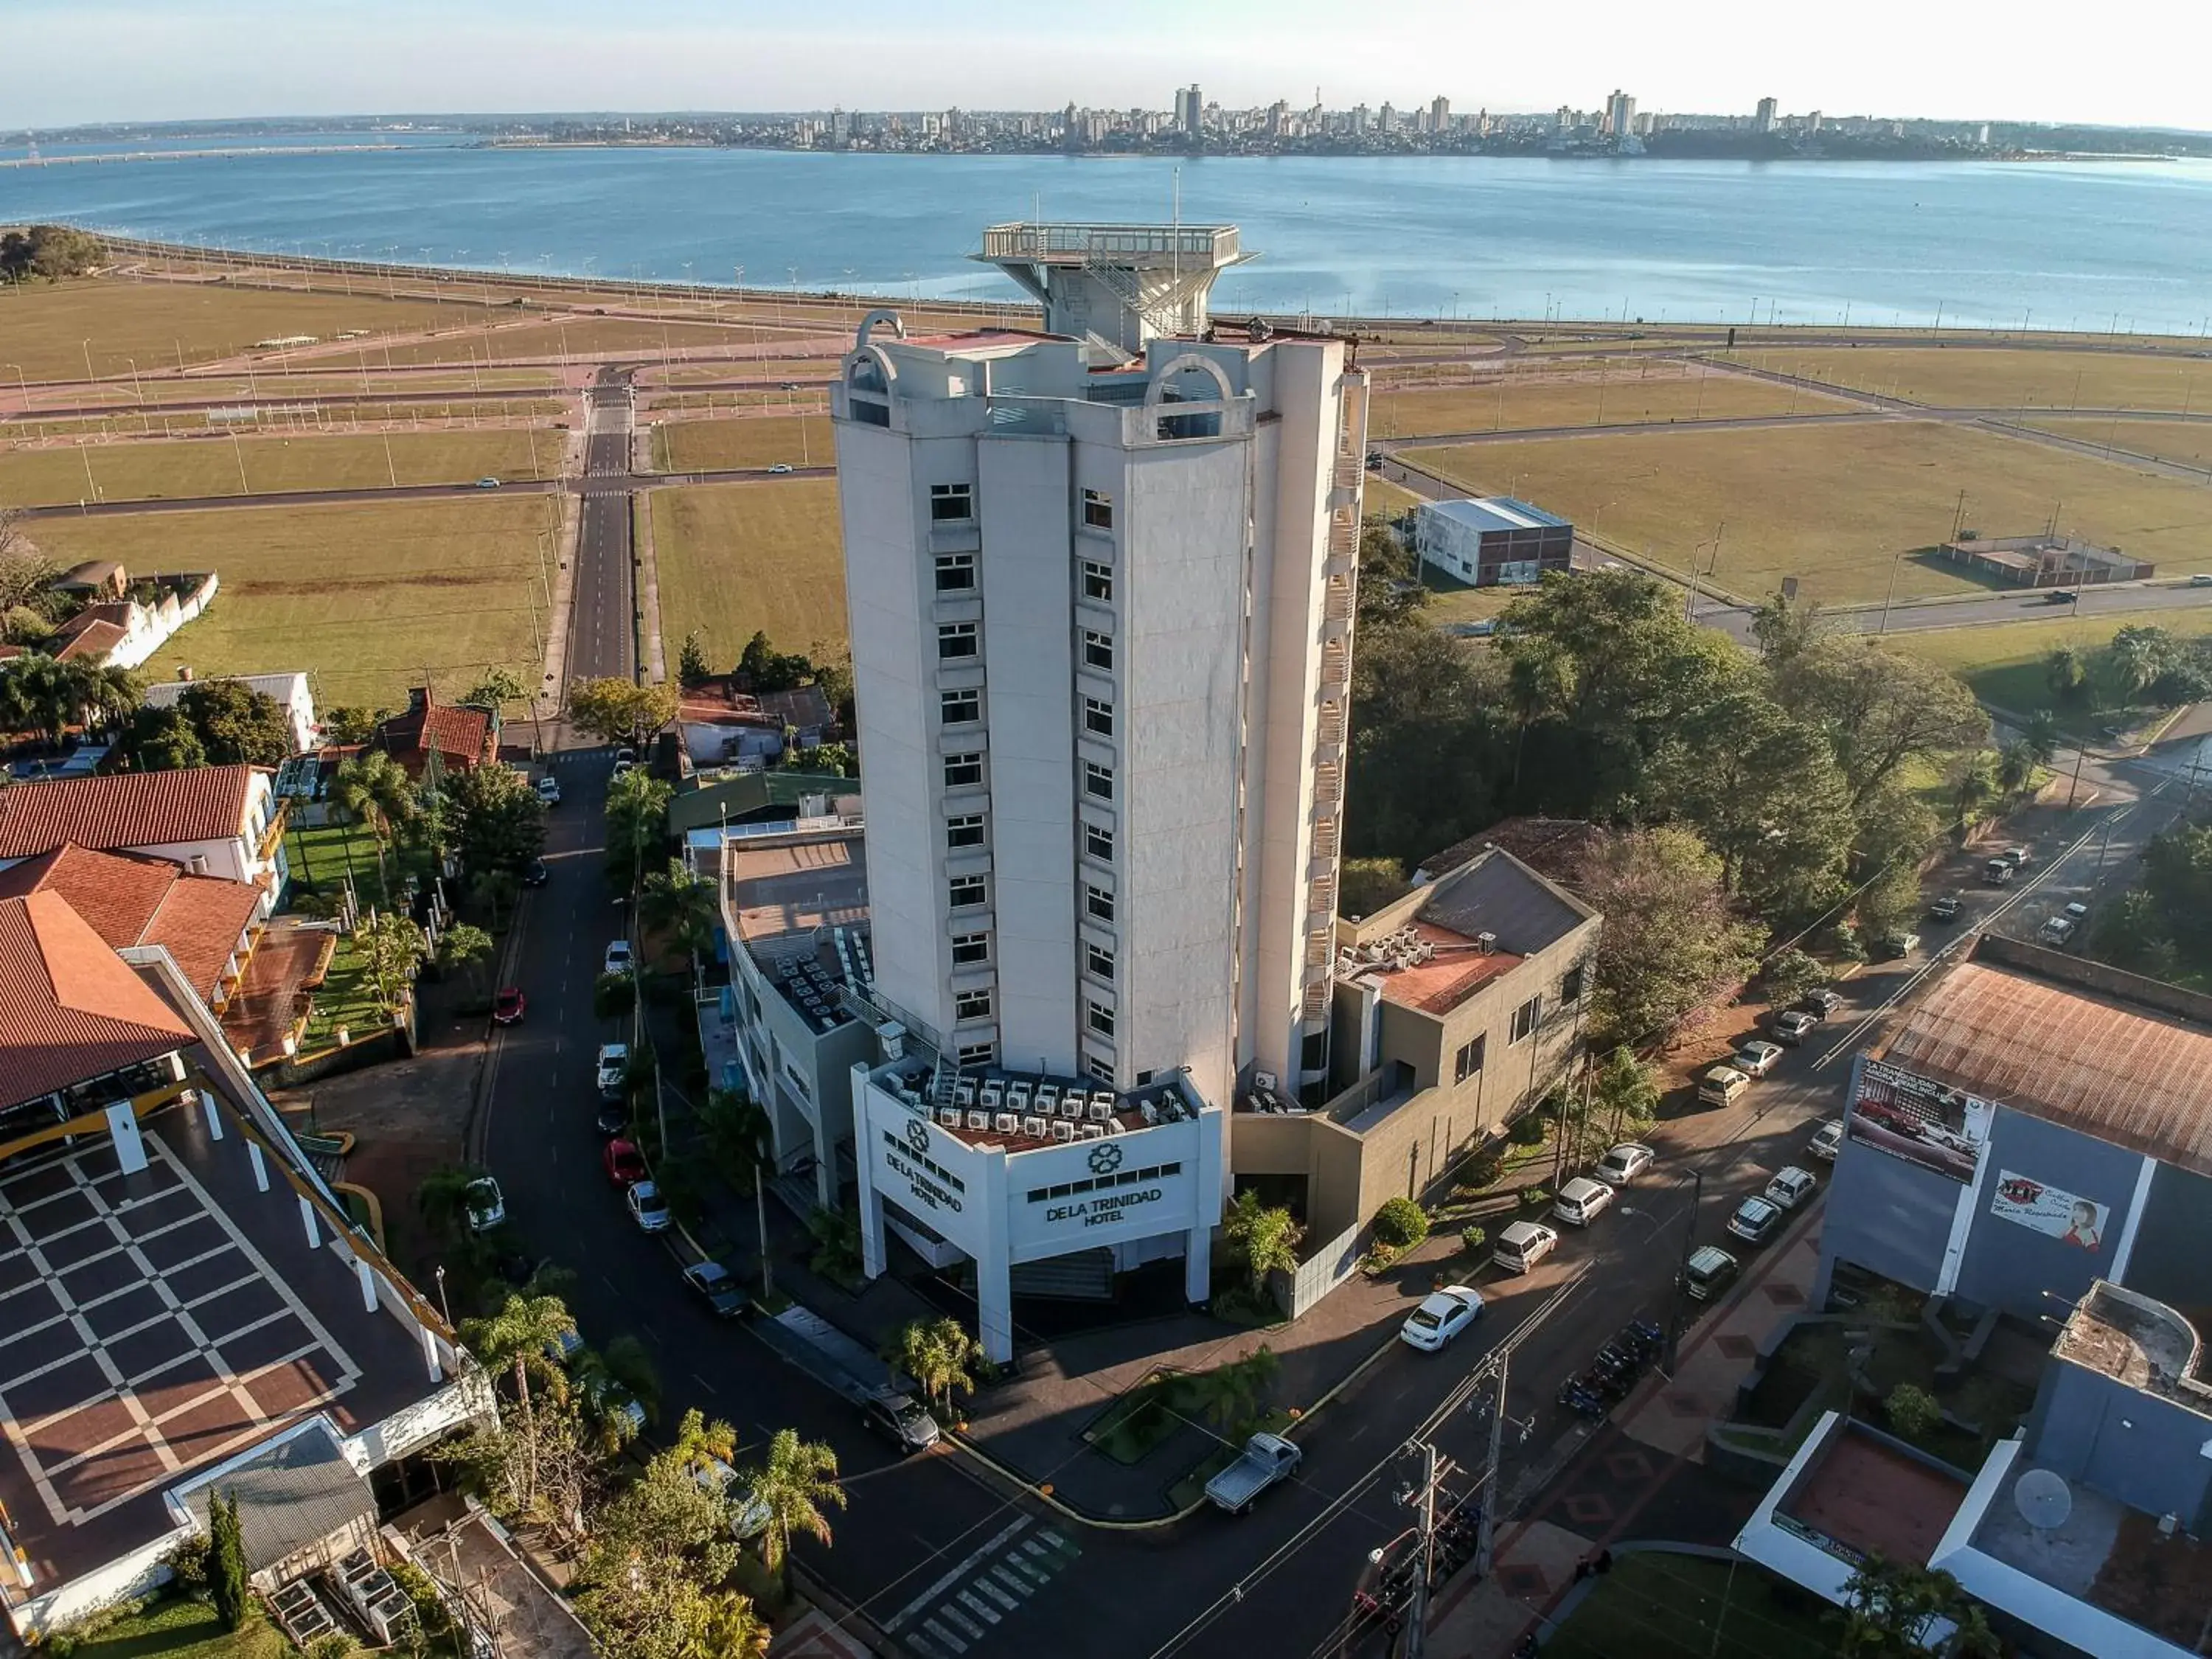 Property building, Bird's-eye View in De la Trinidad Hotel